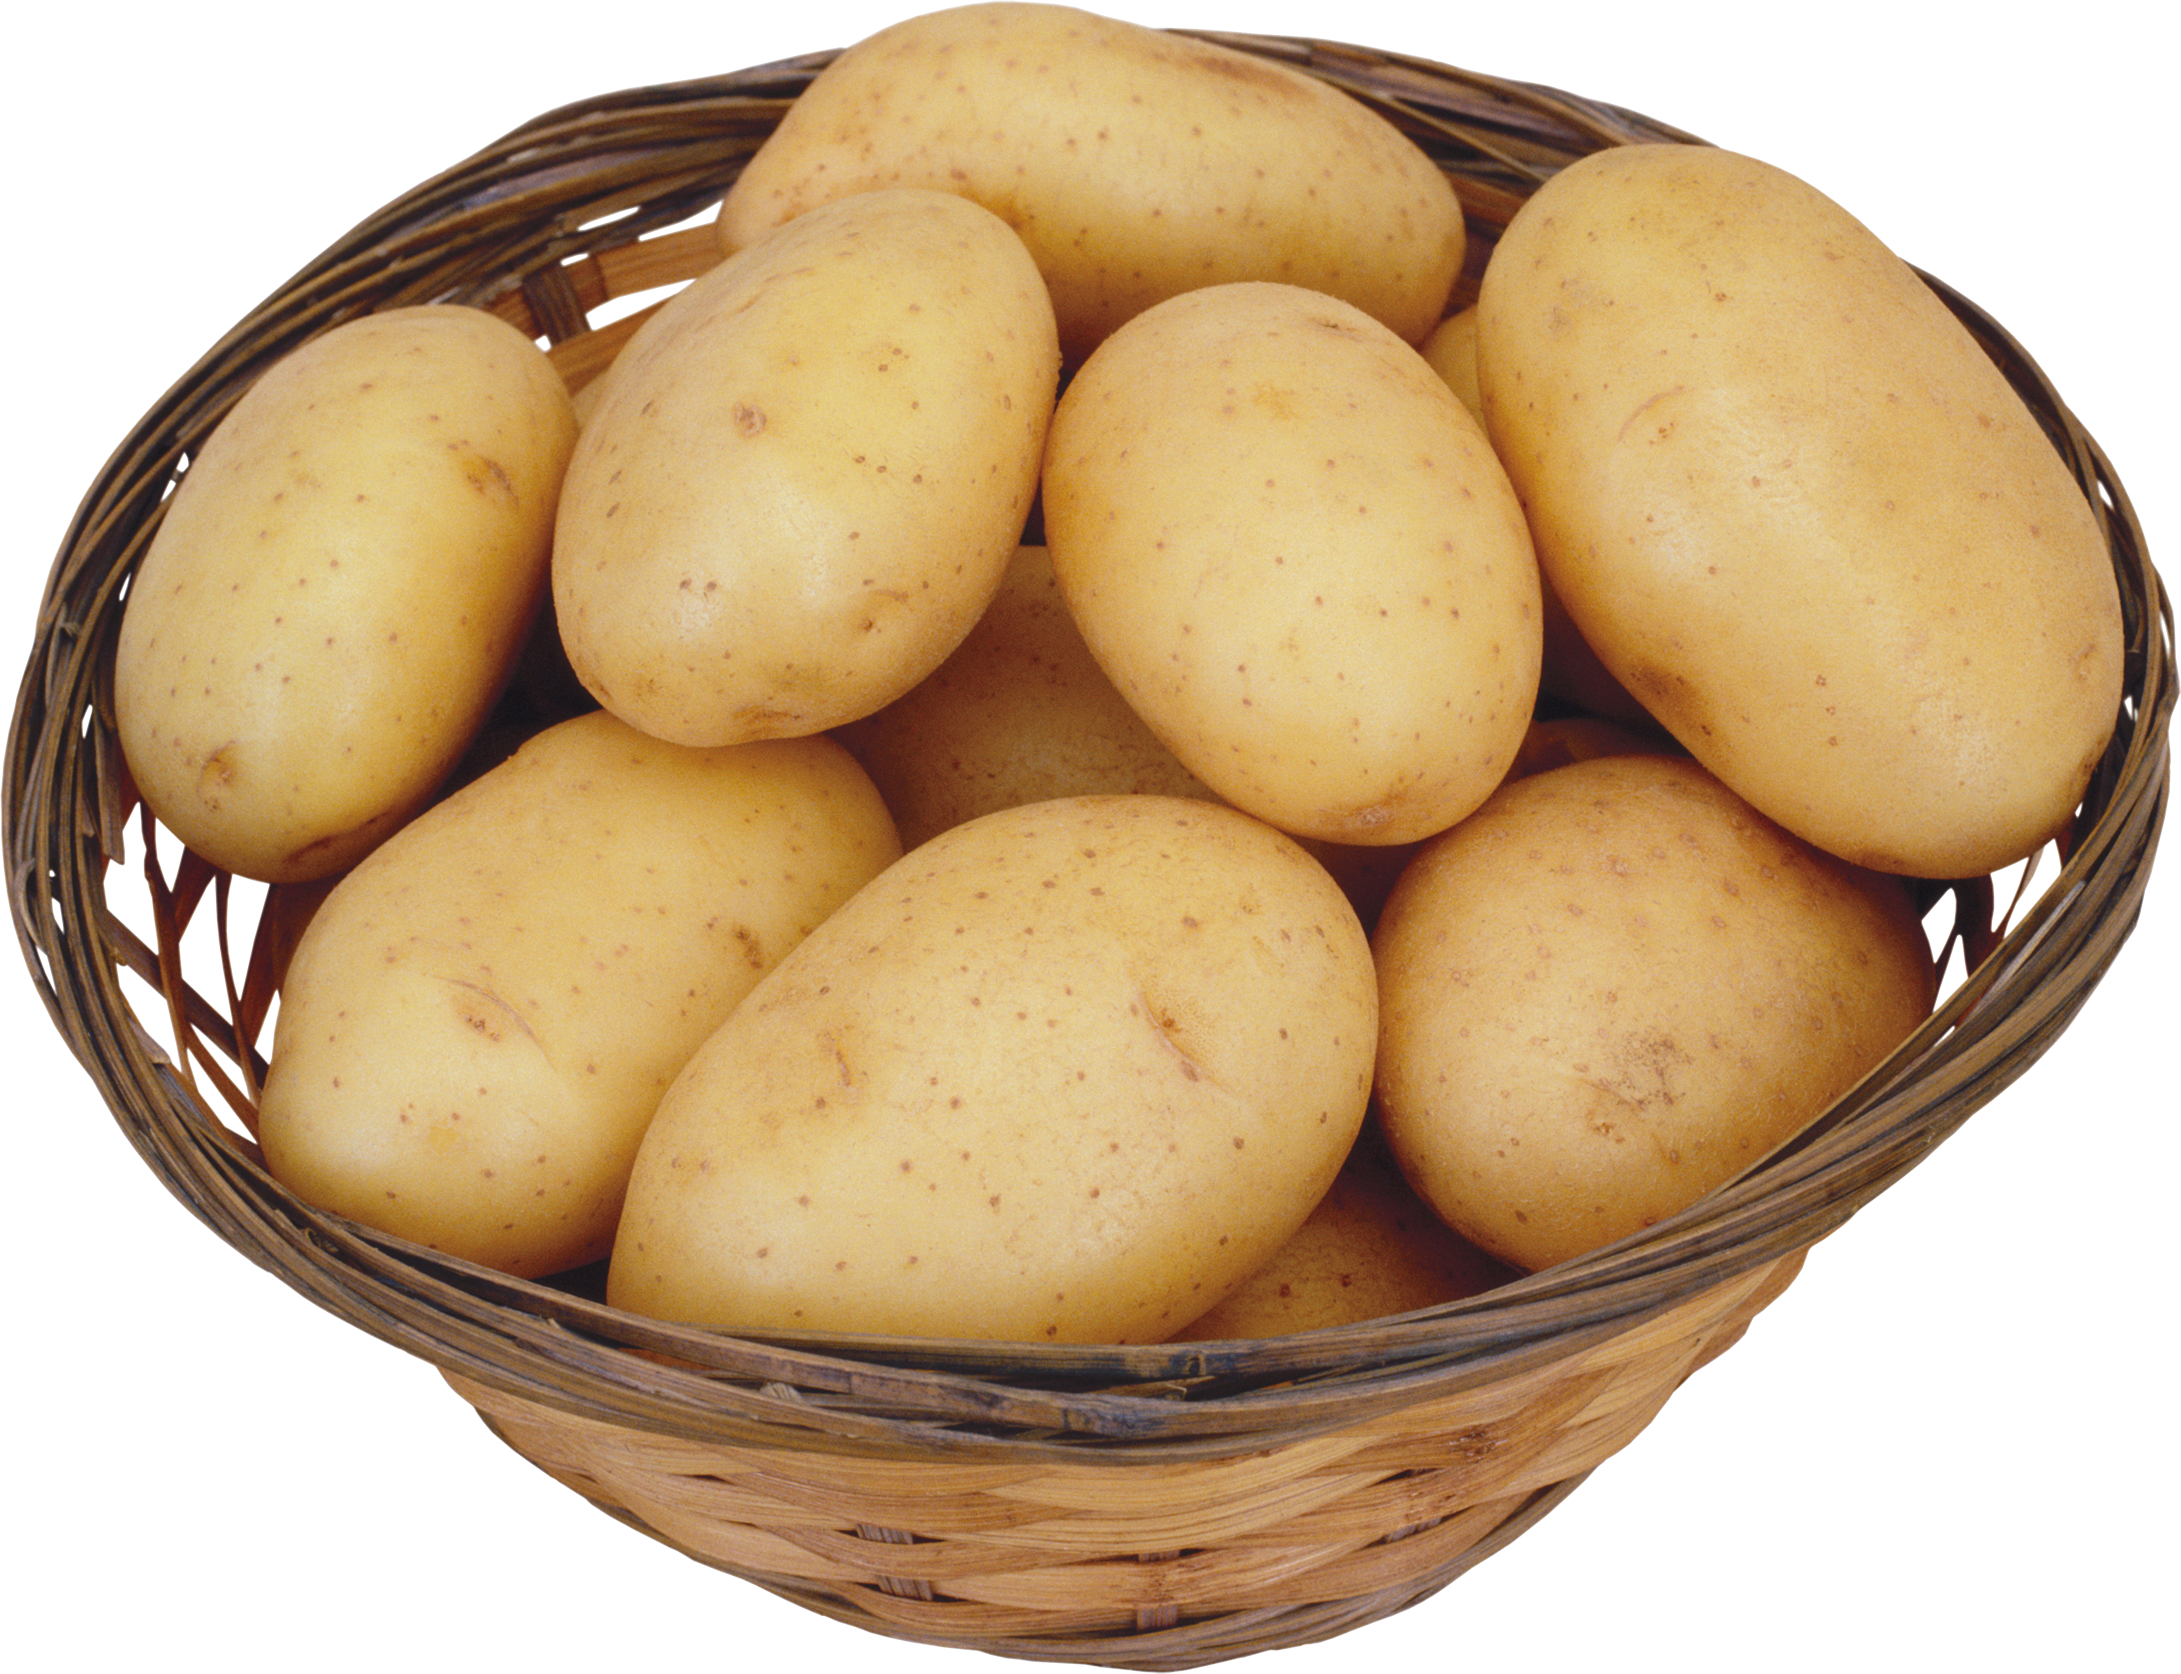 Potato clipart images 2